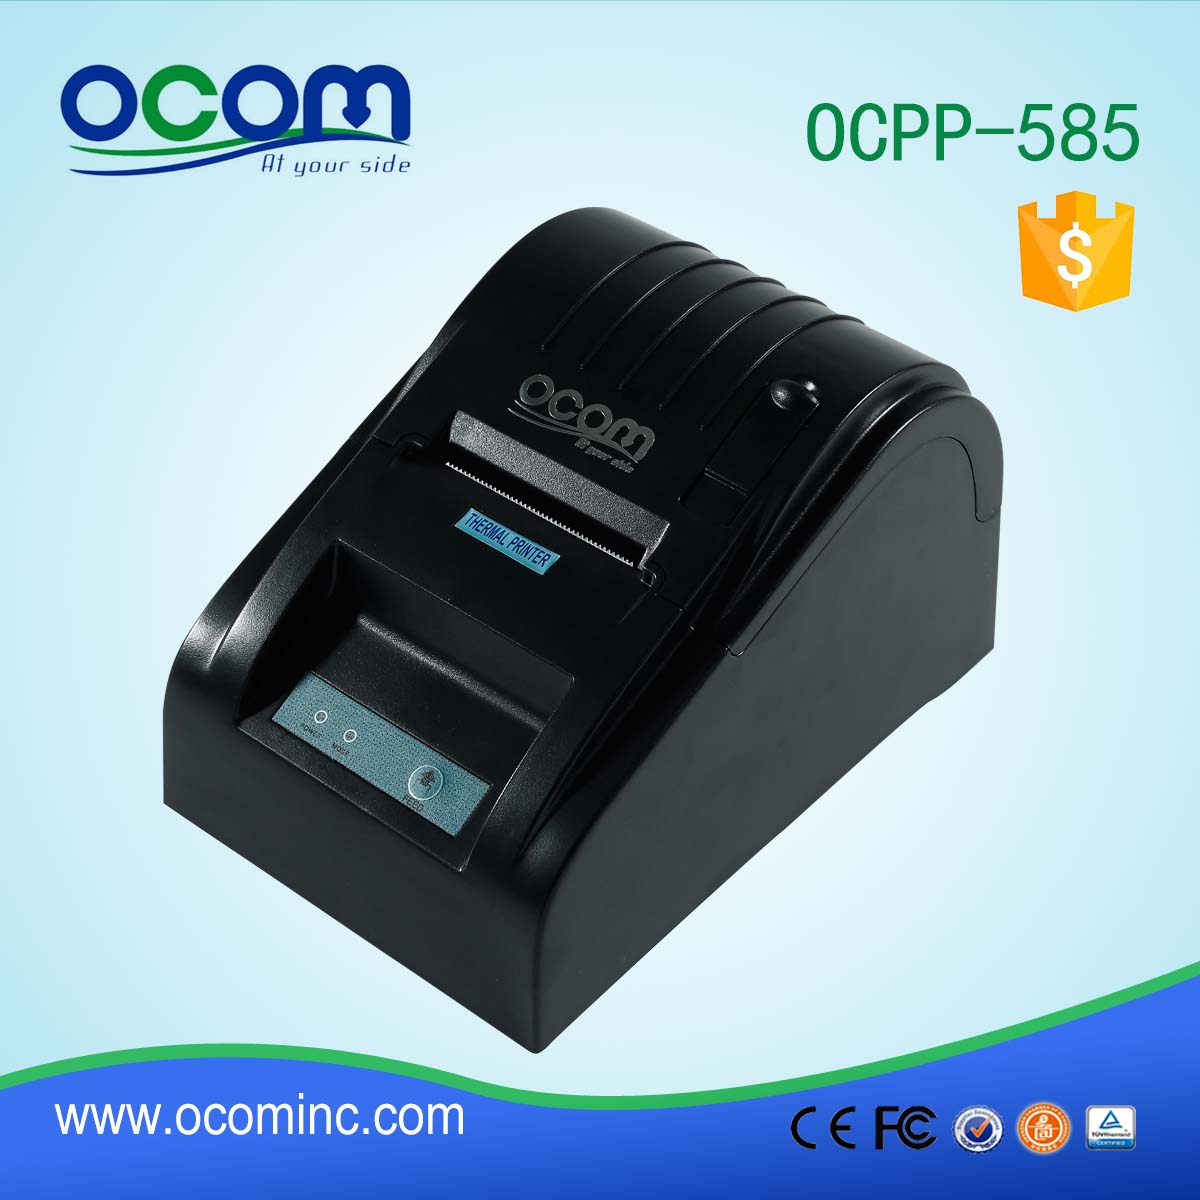 OCPP-586-R POS 58 мм Термопринтер Принтер RS232